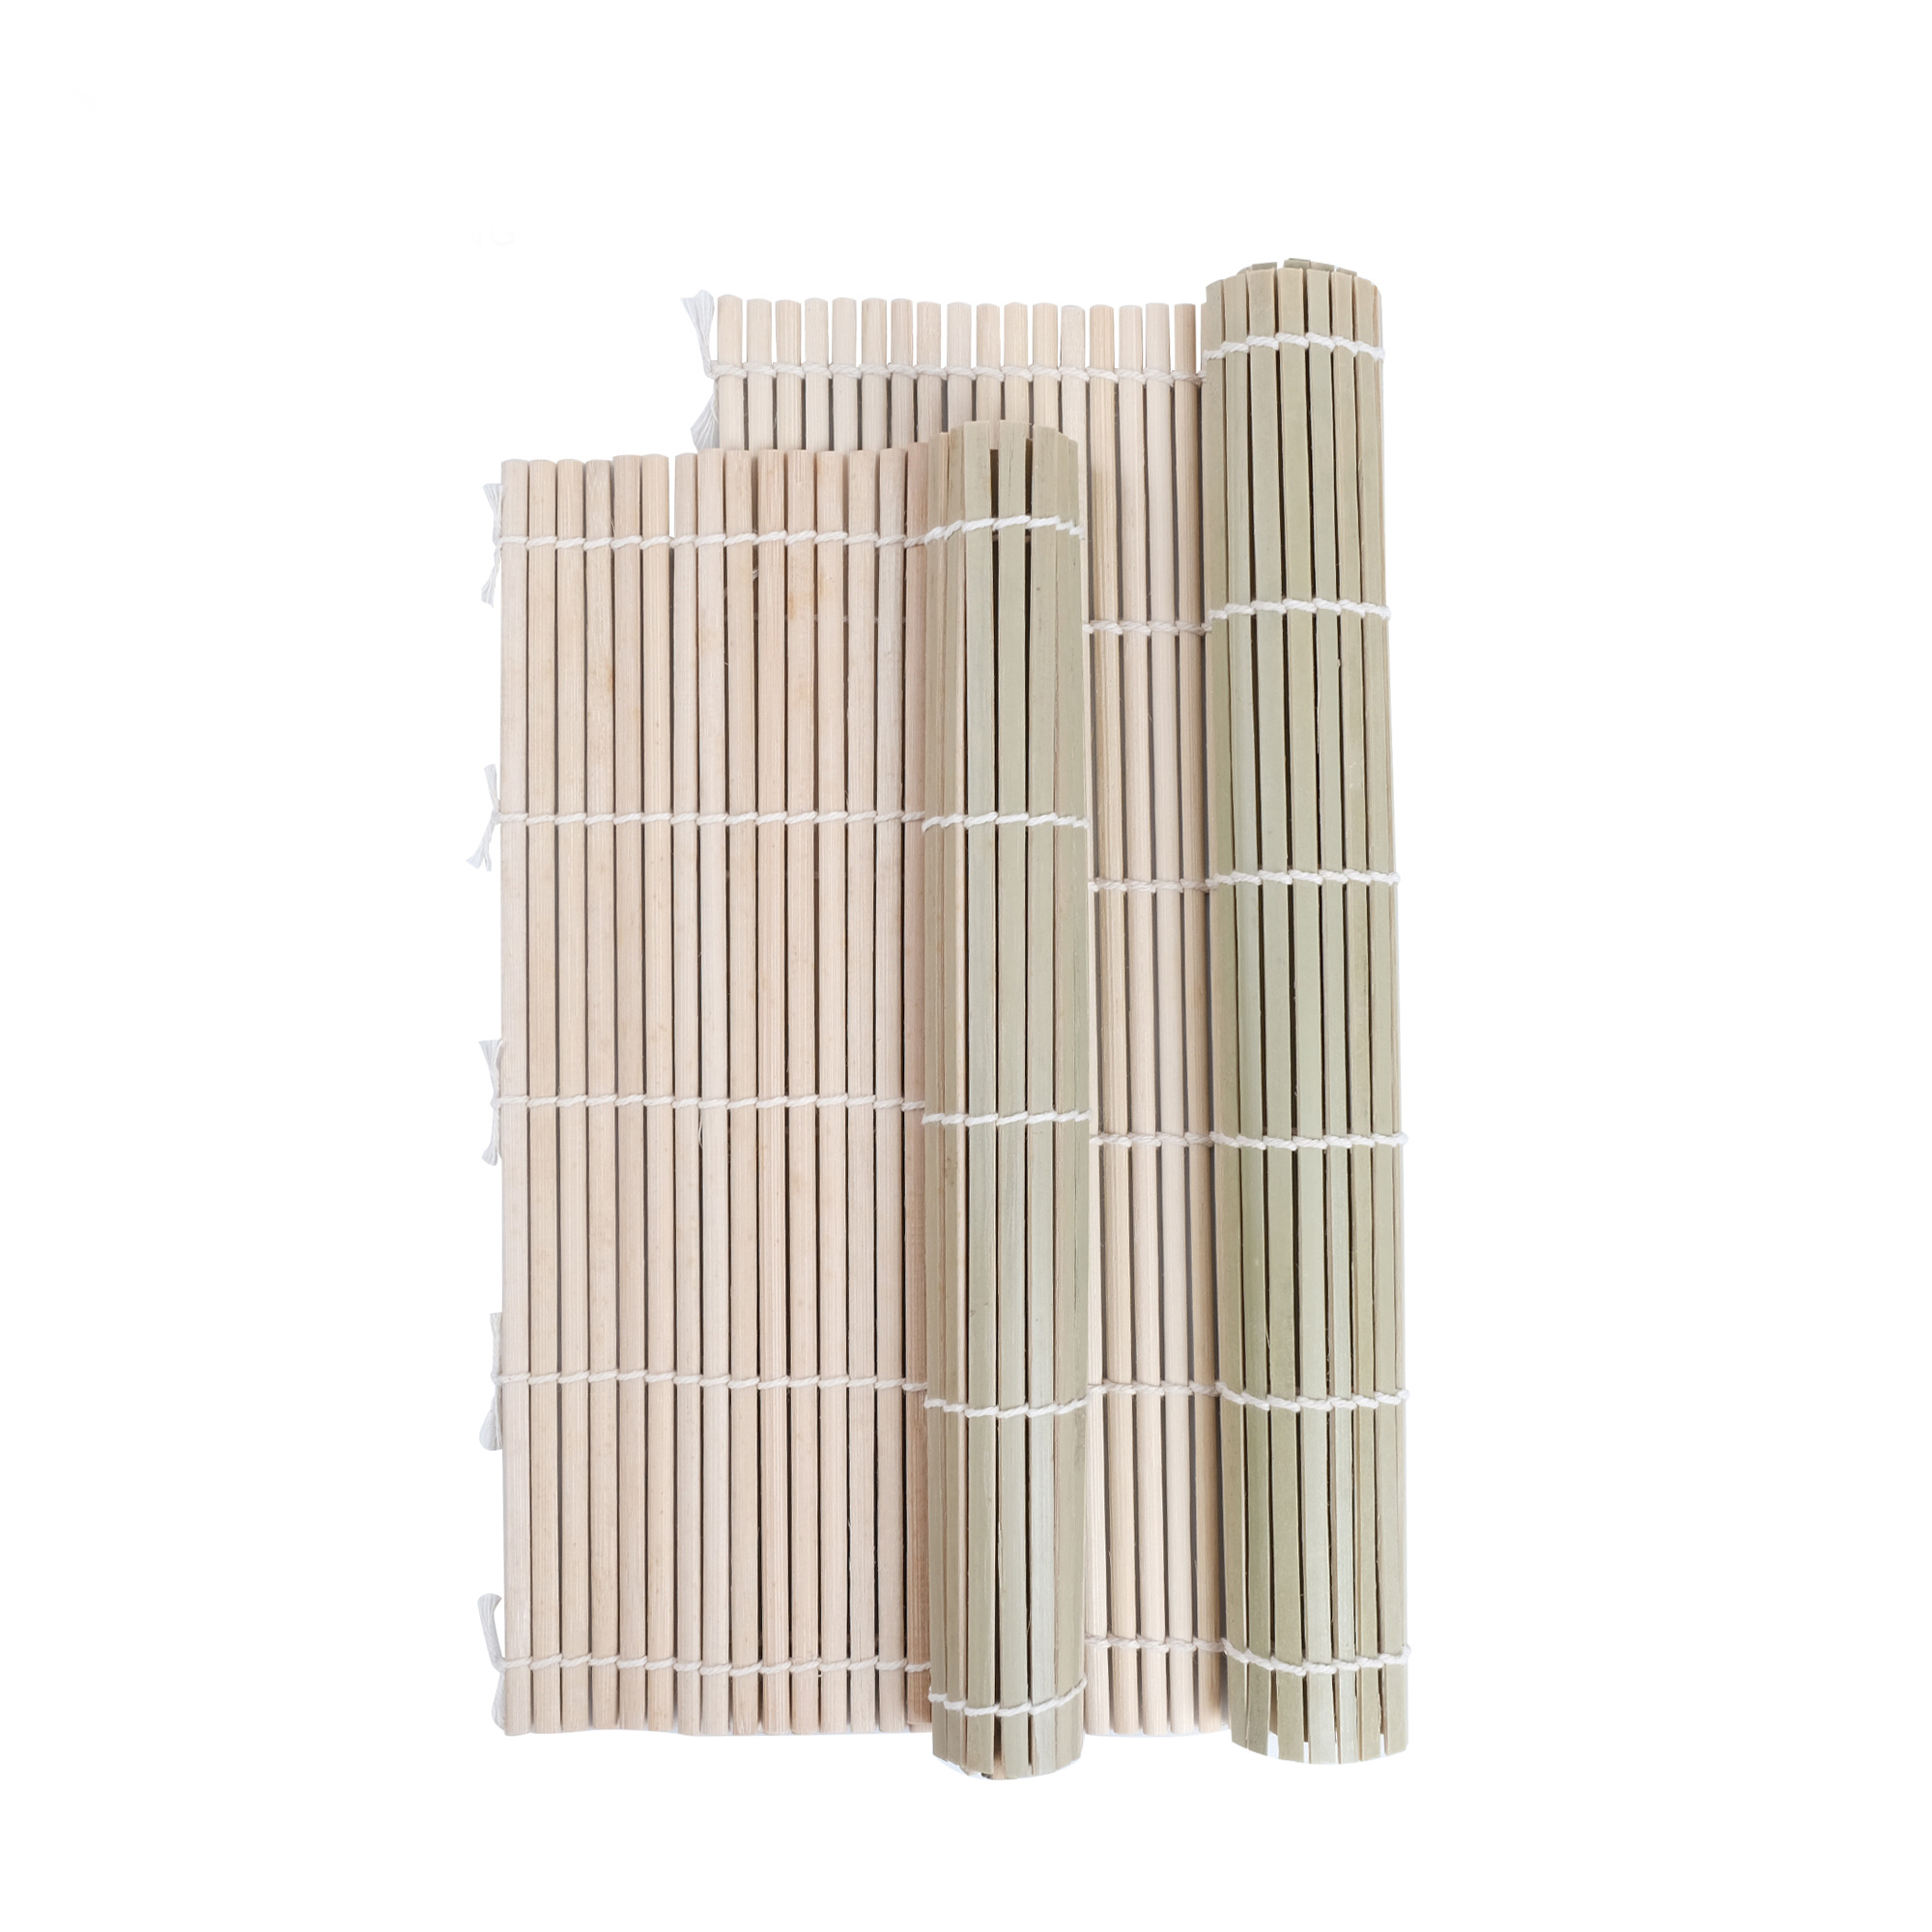 Buy Wholesale China Natural Bamboo Sushi Roll Maker, Bamboo